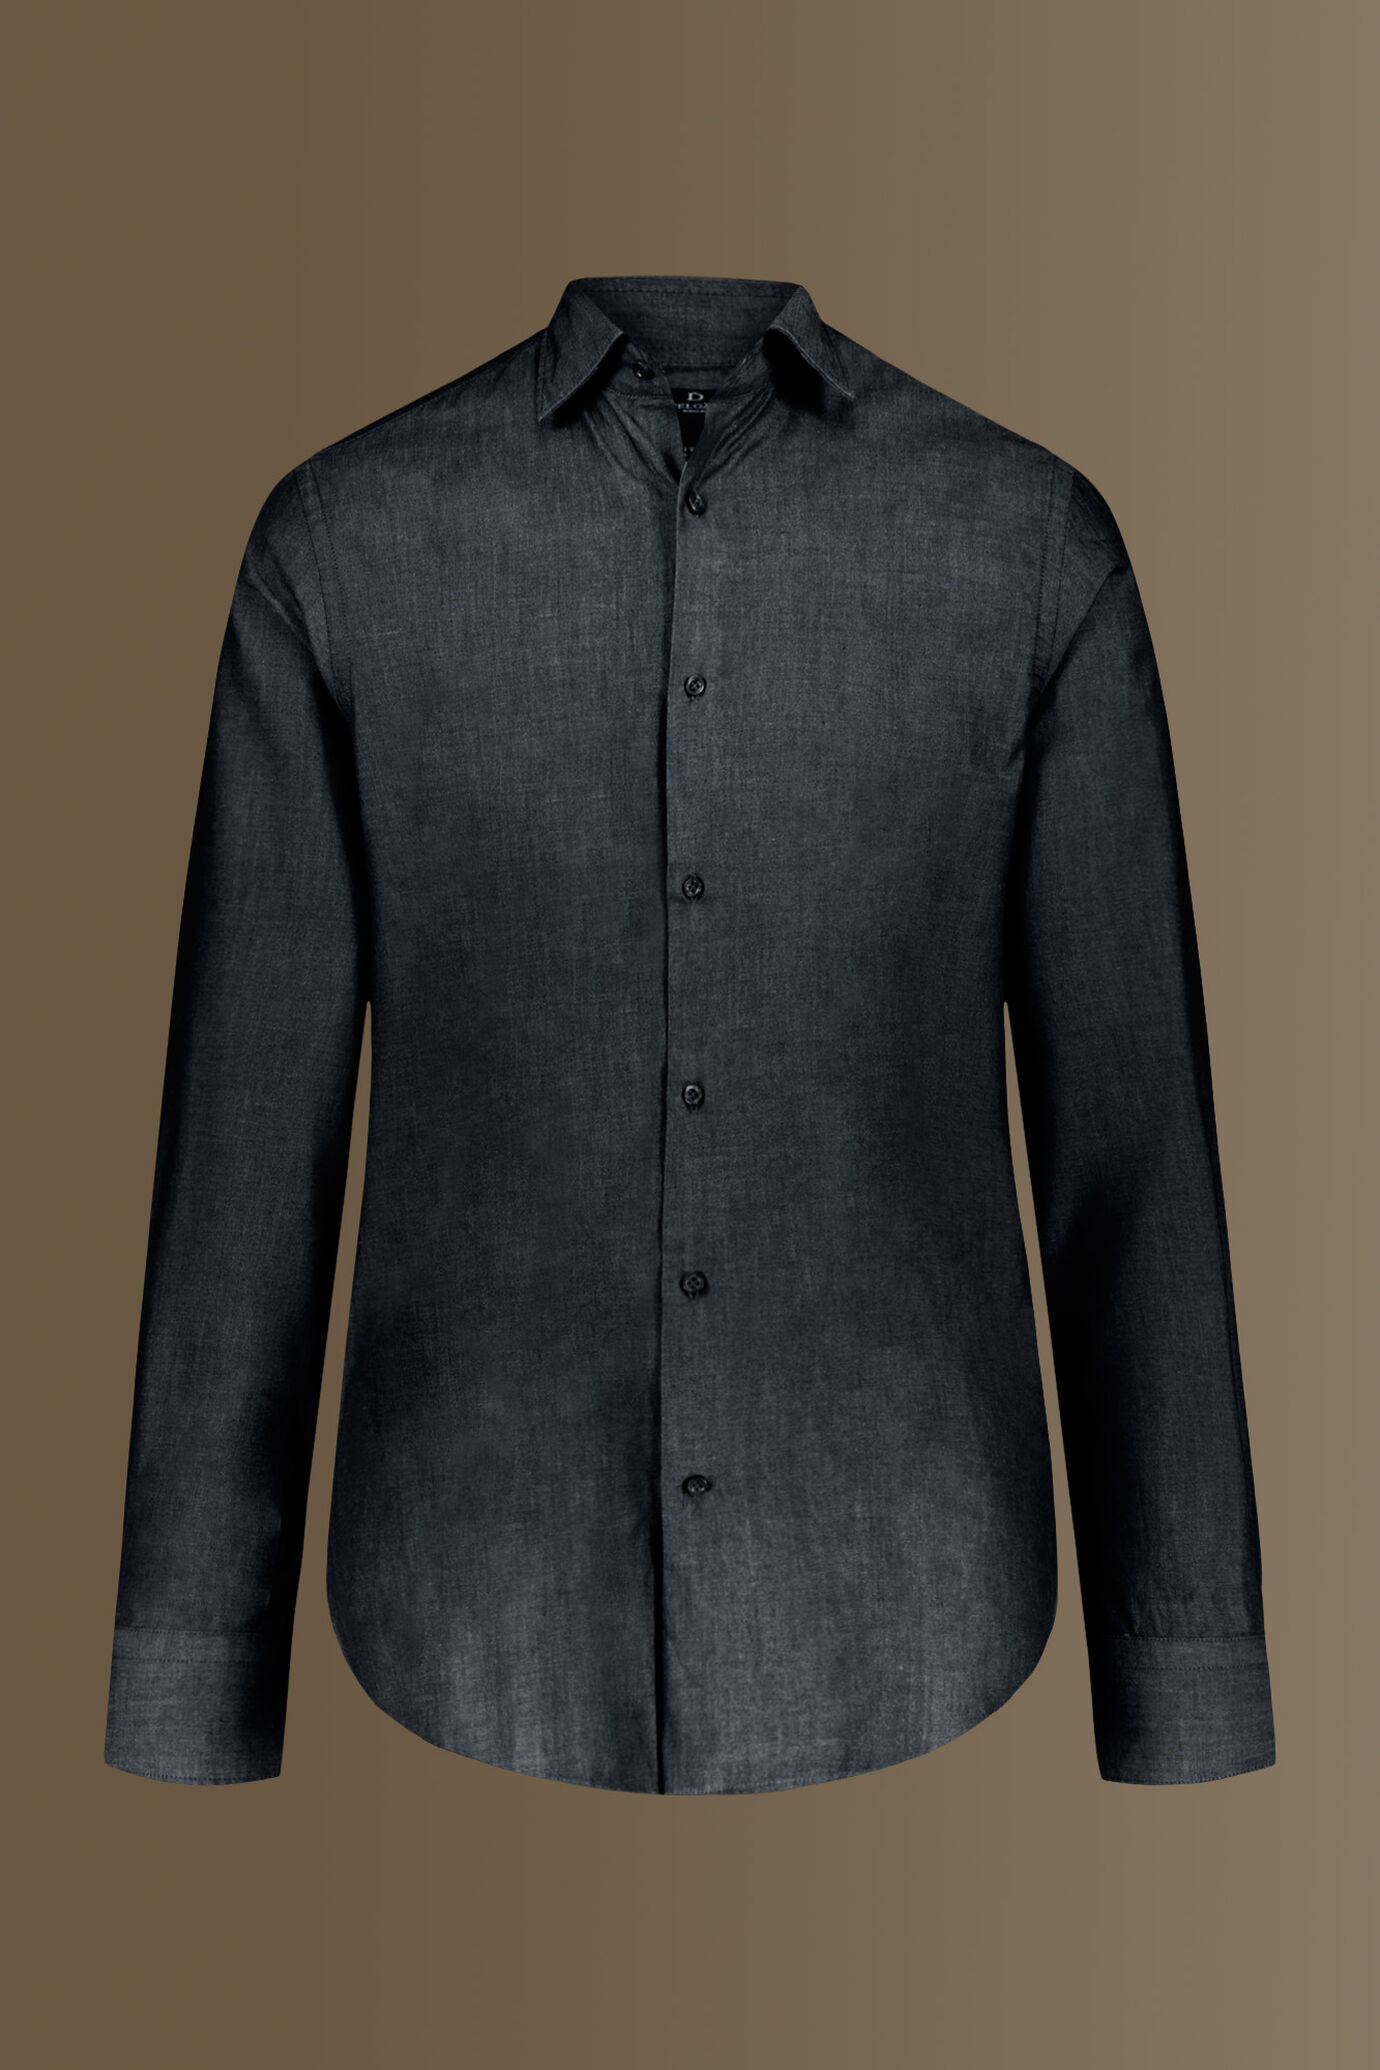 Camicia casual collo francese tinto filo 100% cotone tessuto twill chambray image number 3